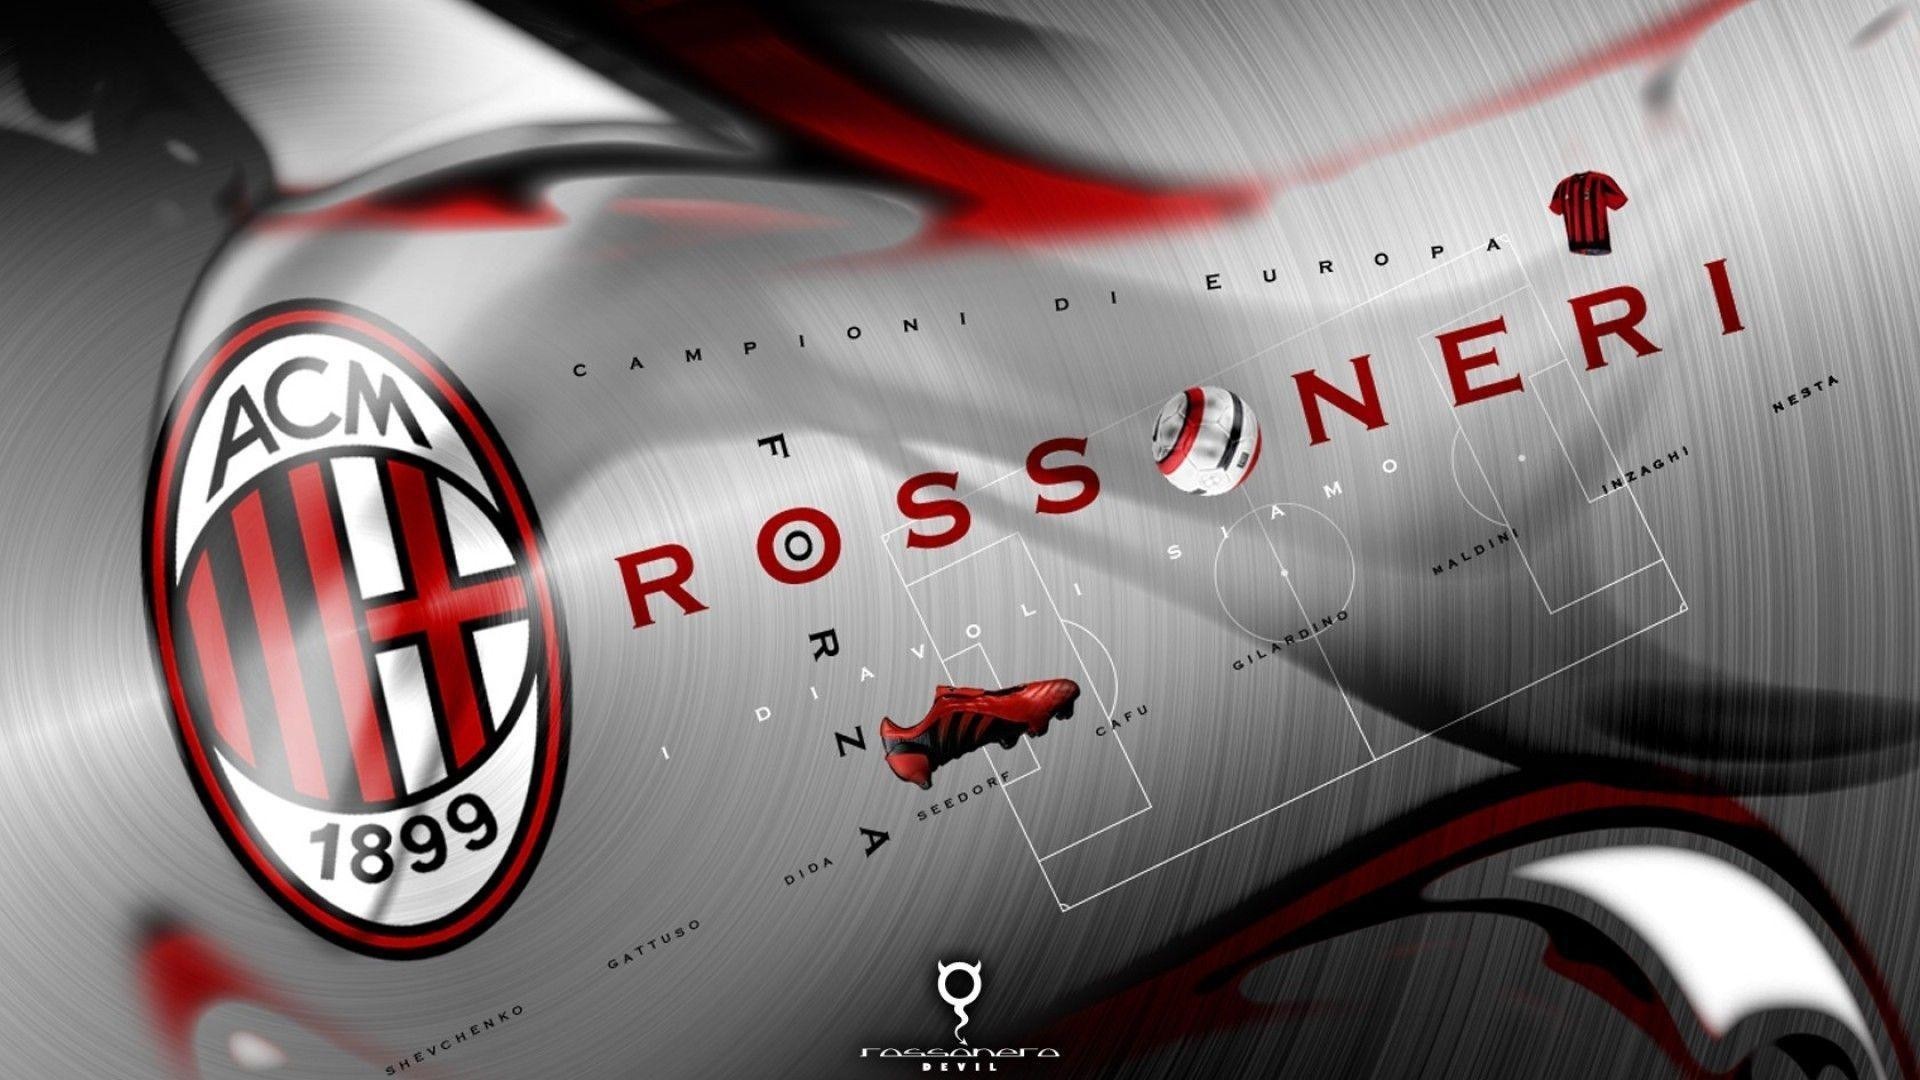 Inter Milan Soccer Logo Wallpapers